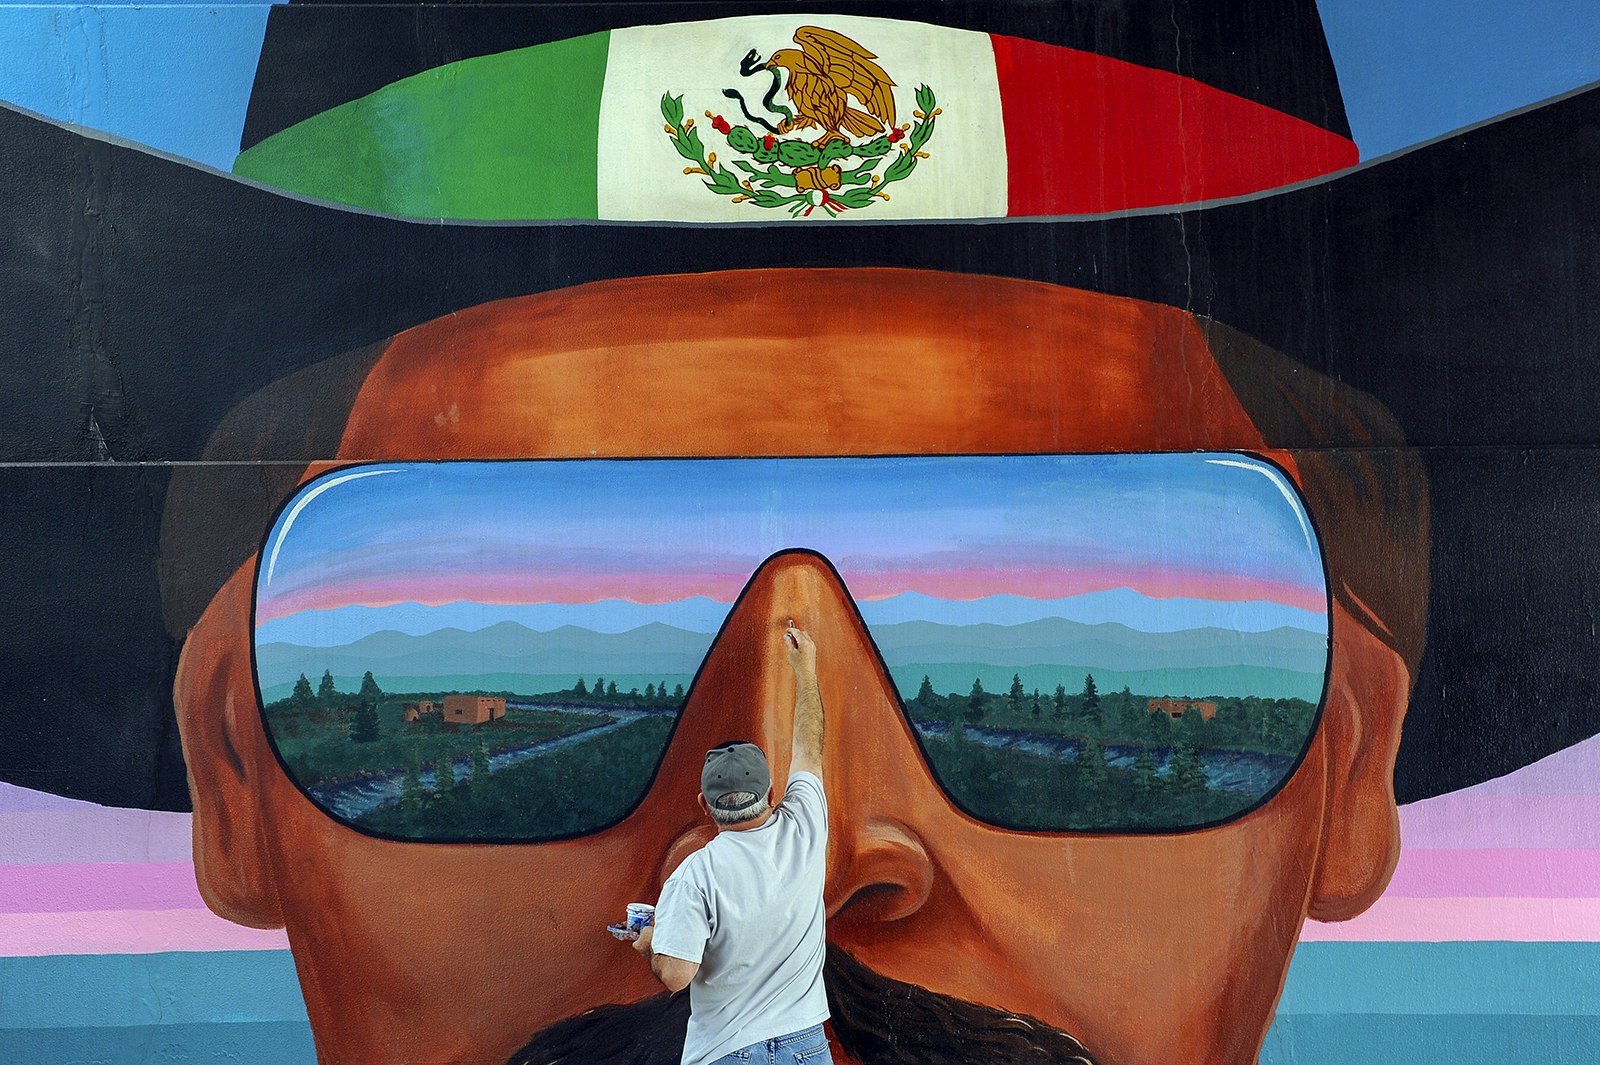 En konstnär bättrar på en väggmålning som föreställer en man som bär en cowboyhatt med den mexikanska flaggan på bandet och solglasögon som speglar Colorados landskap.  Denver, Colorado.